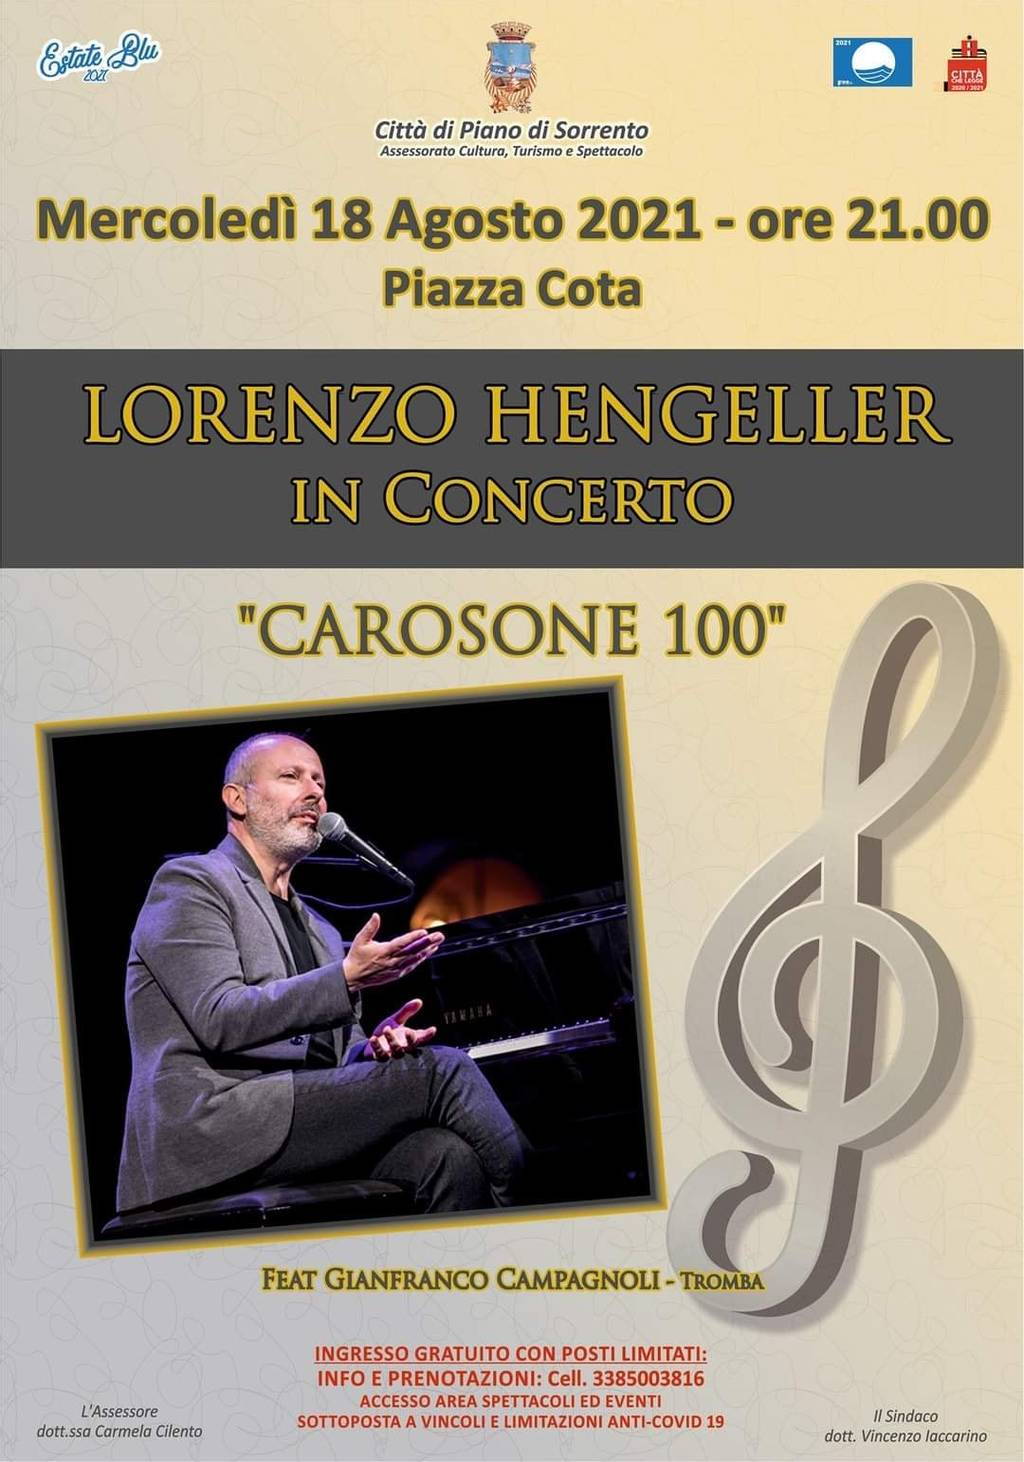 Lorenzo Hengeller in concert